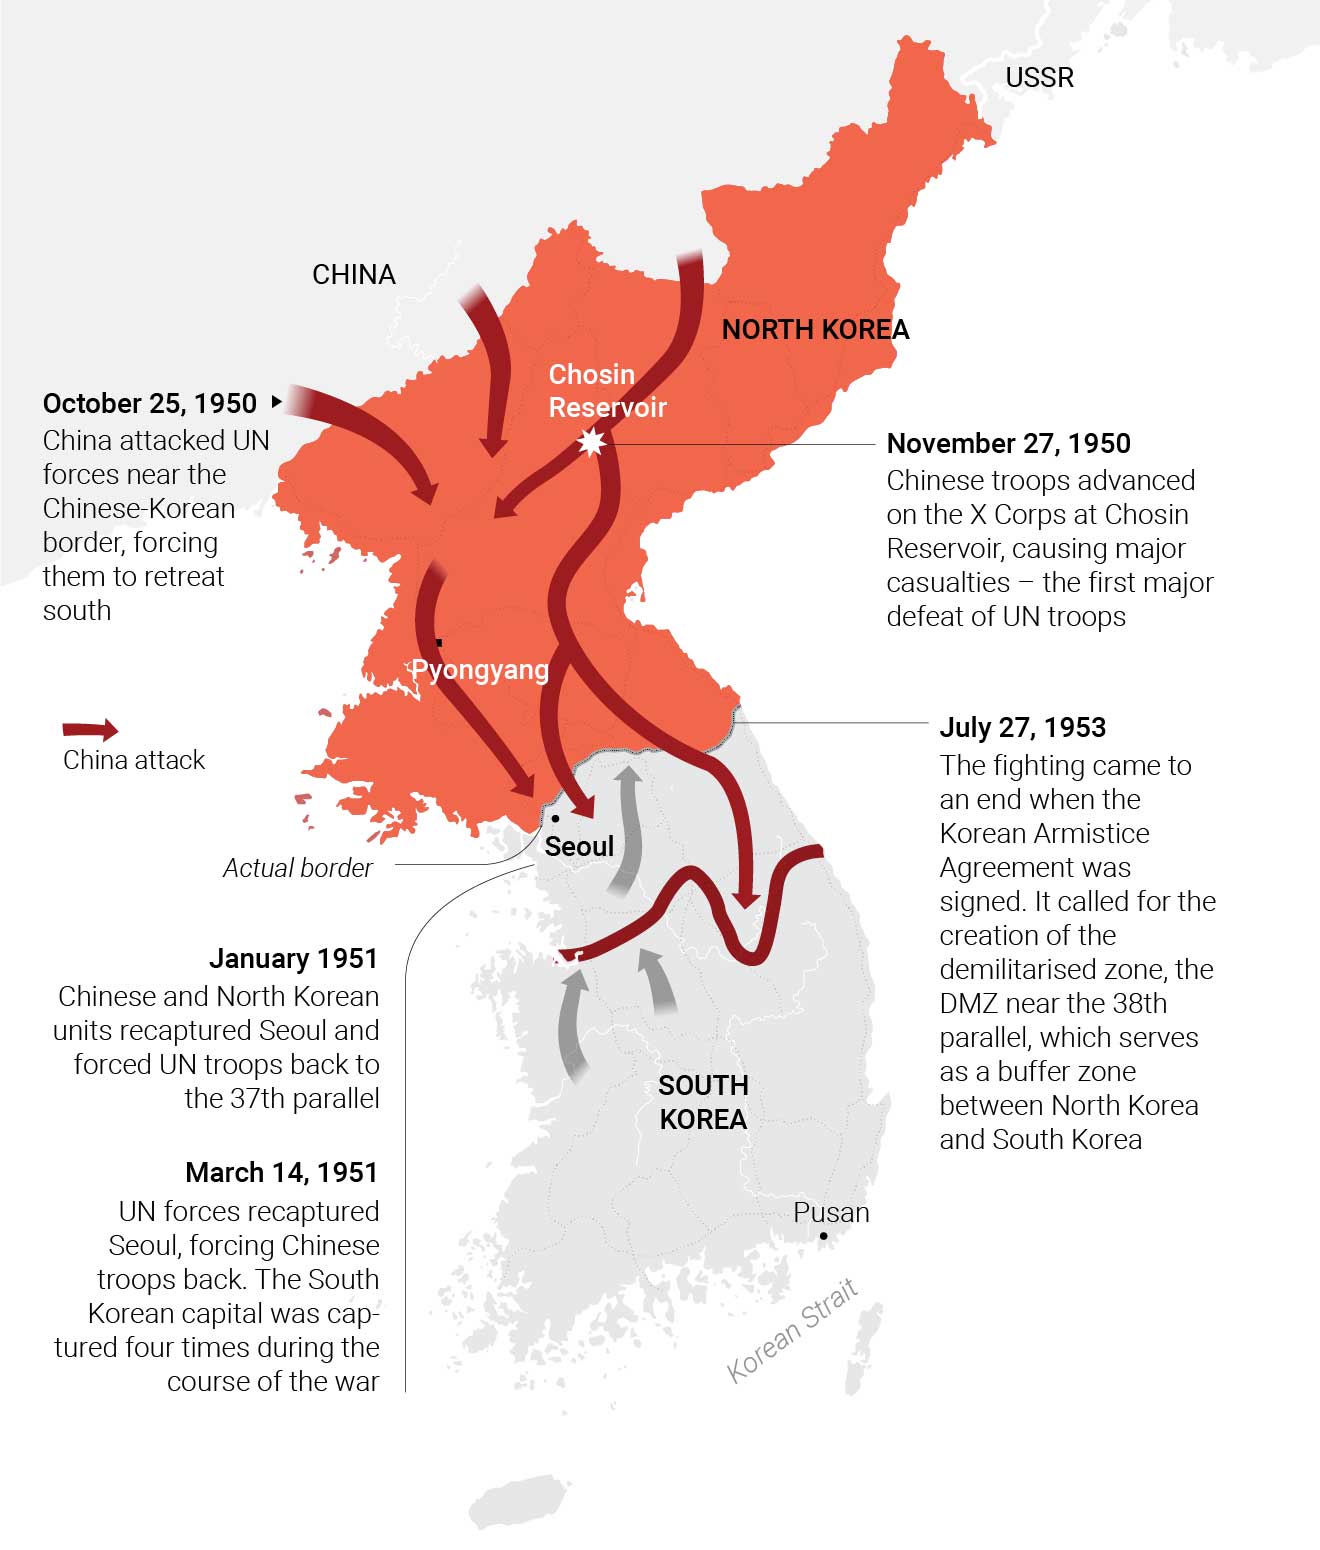 chinese intervention in korean war essay